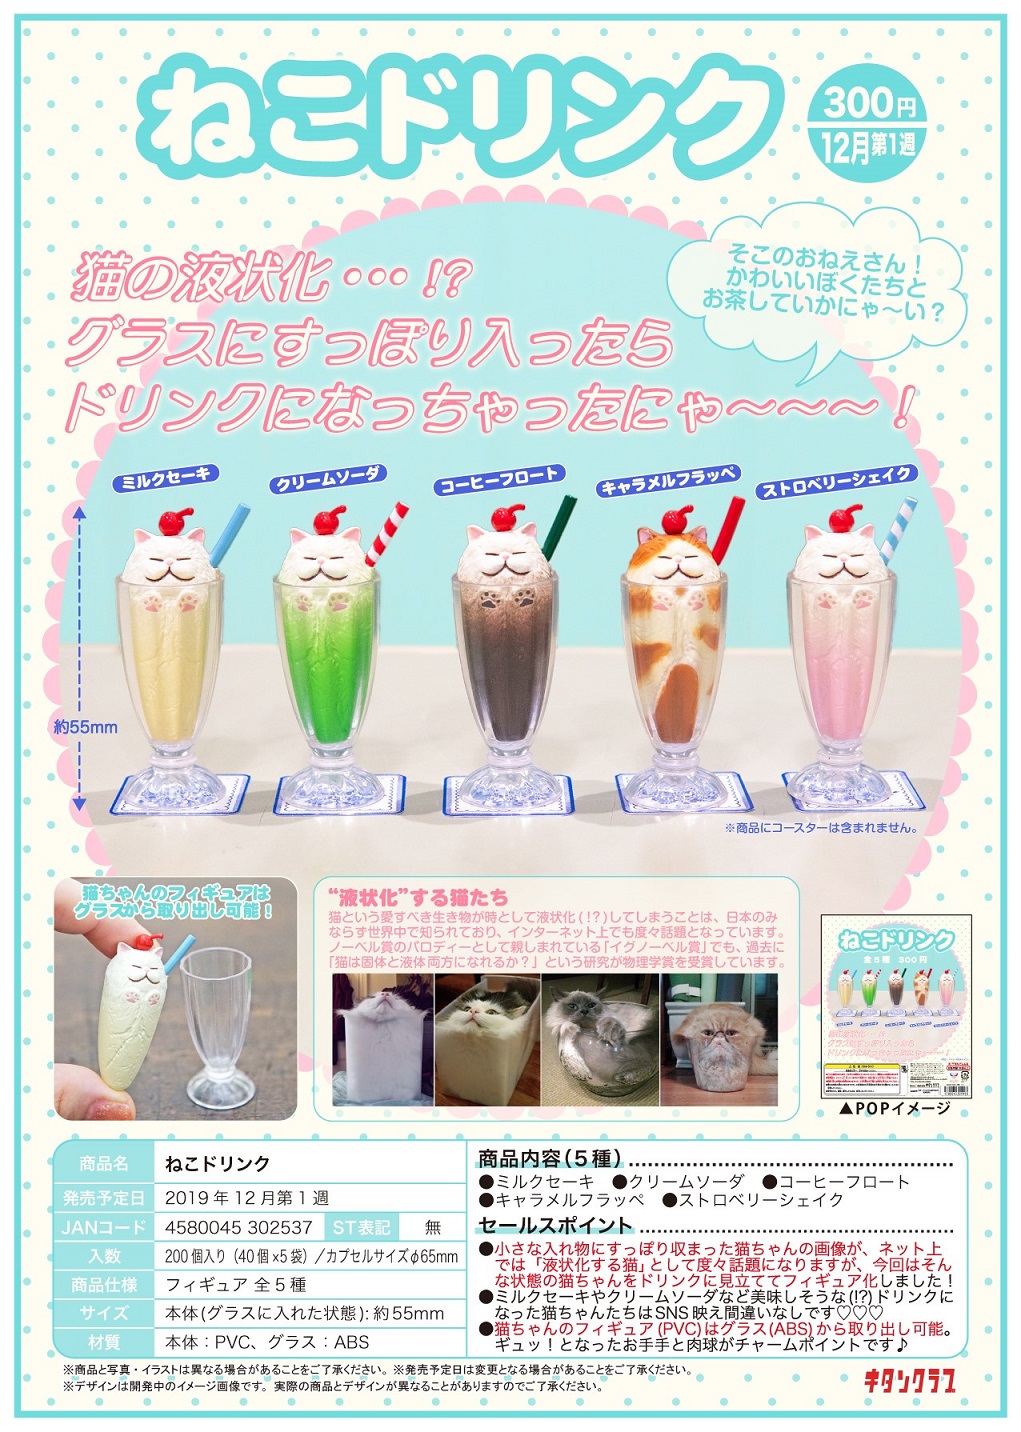 300日元扭蛋 小手办 猫咪饮料 全5种 (1袋40个) 302537